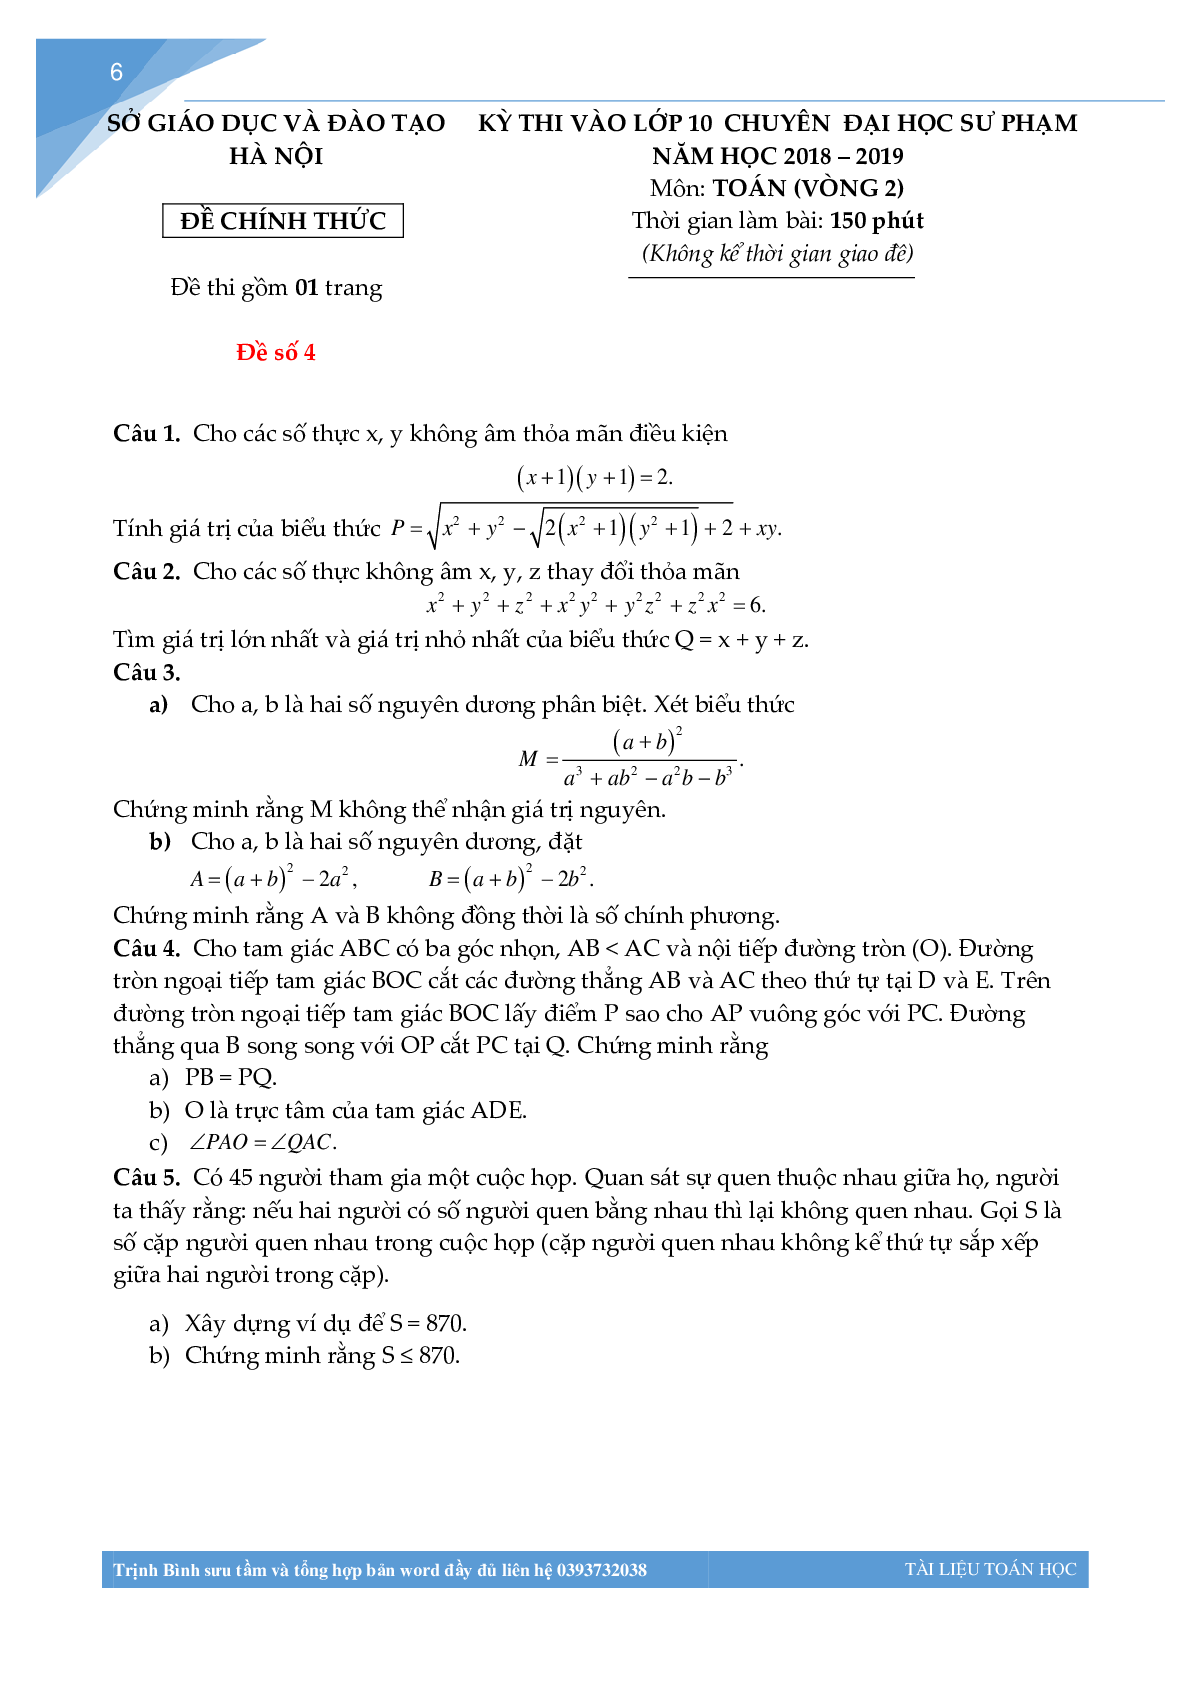 Bộ đề thi toán vào lớp 10 chuyên đại học sư phạm Hà Nội (trang 5)